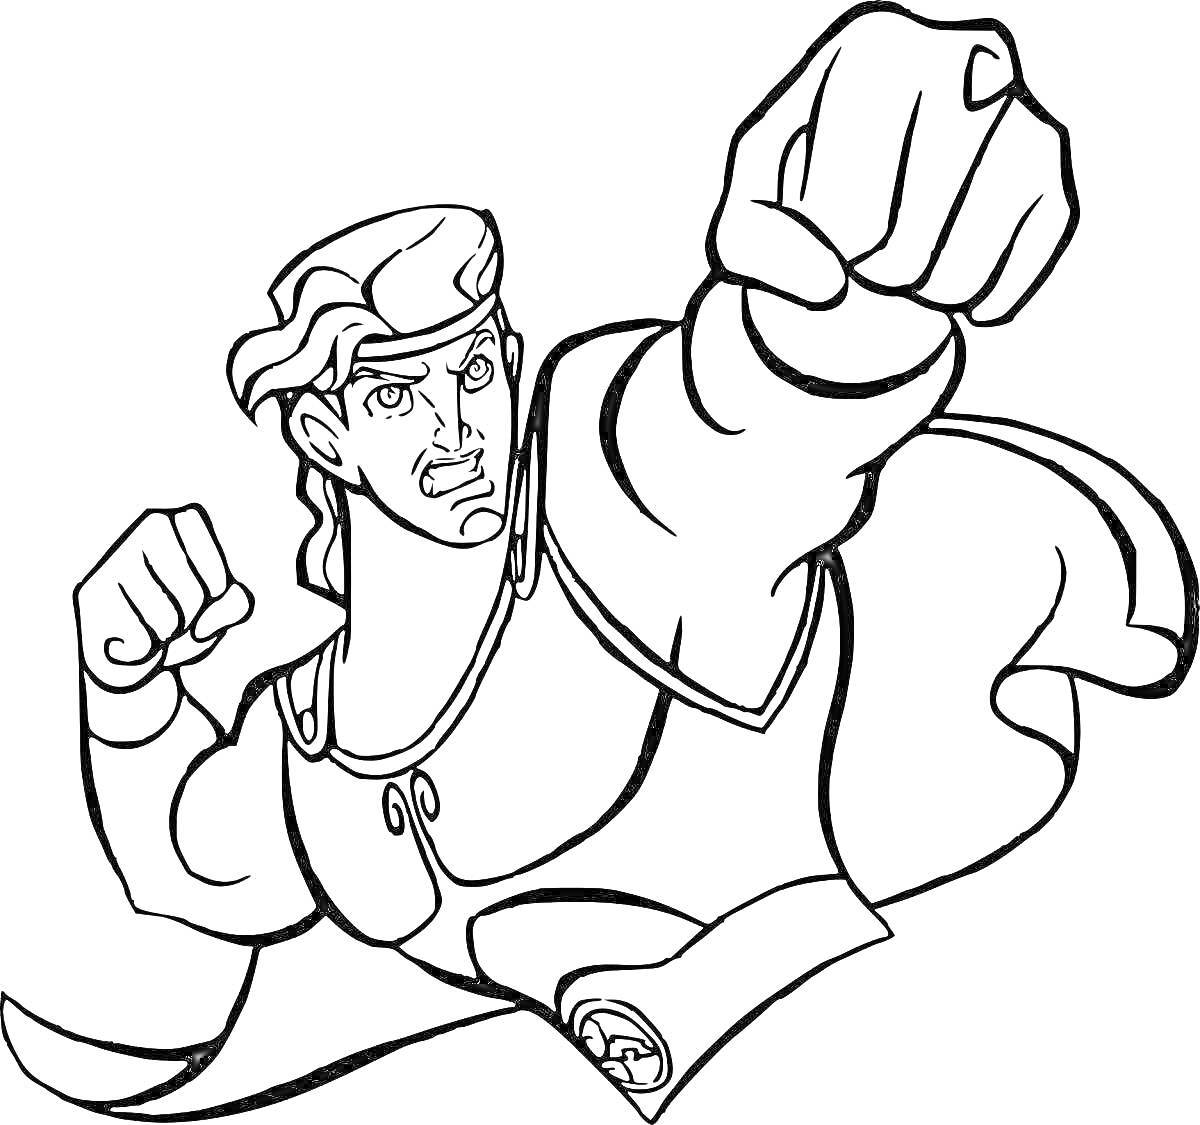 Раскраска Герой в плаще с поднятой рукой в жесте ударяющего кулака